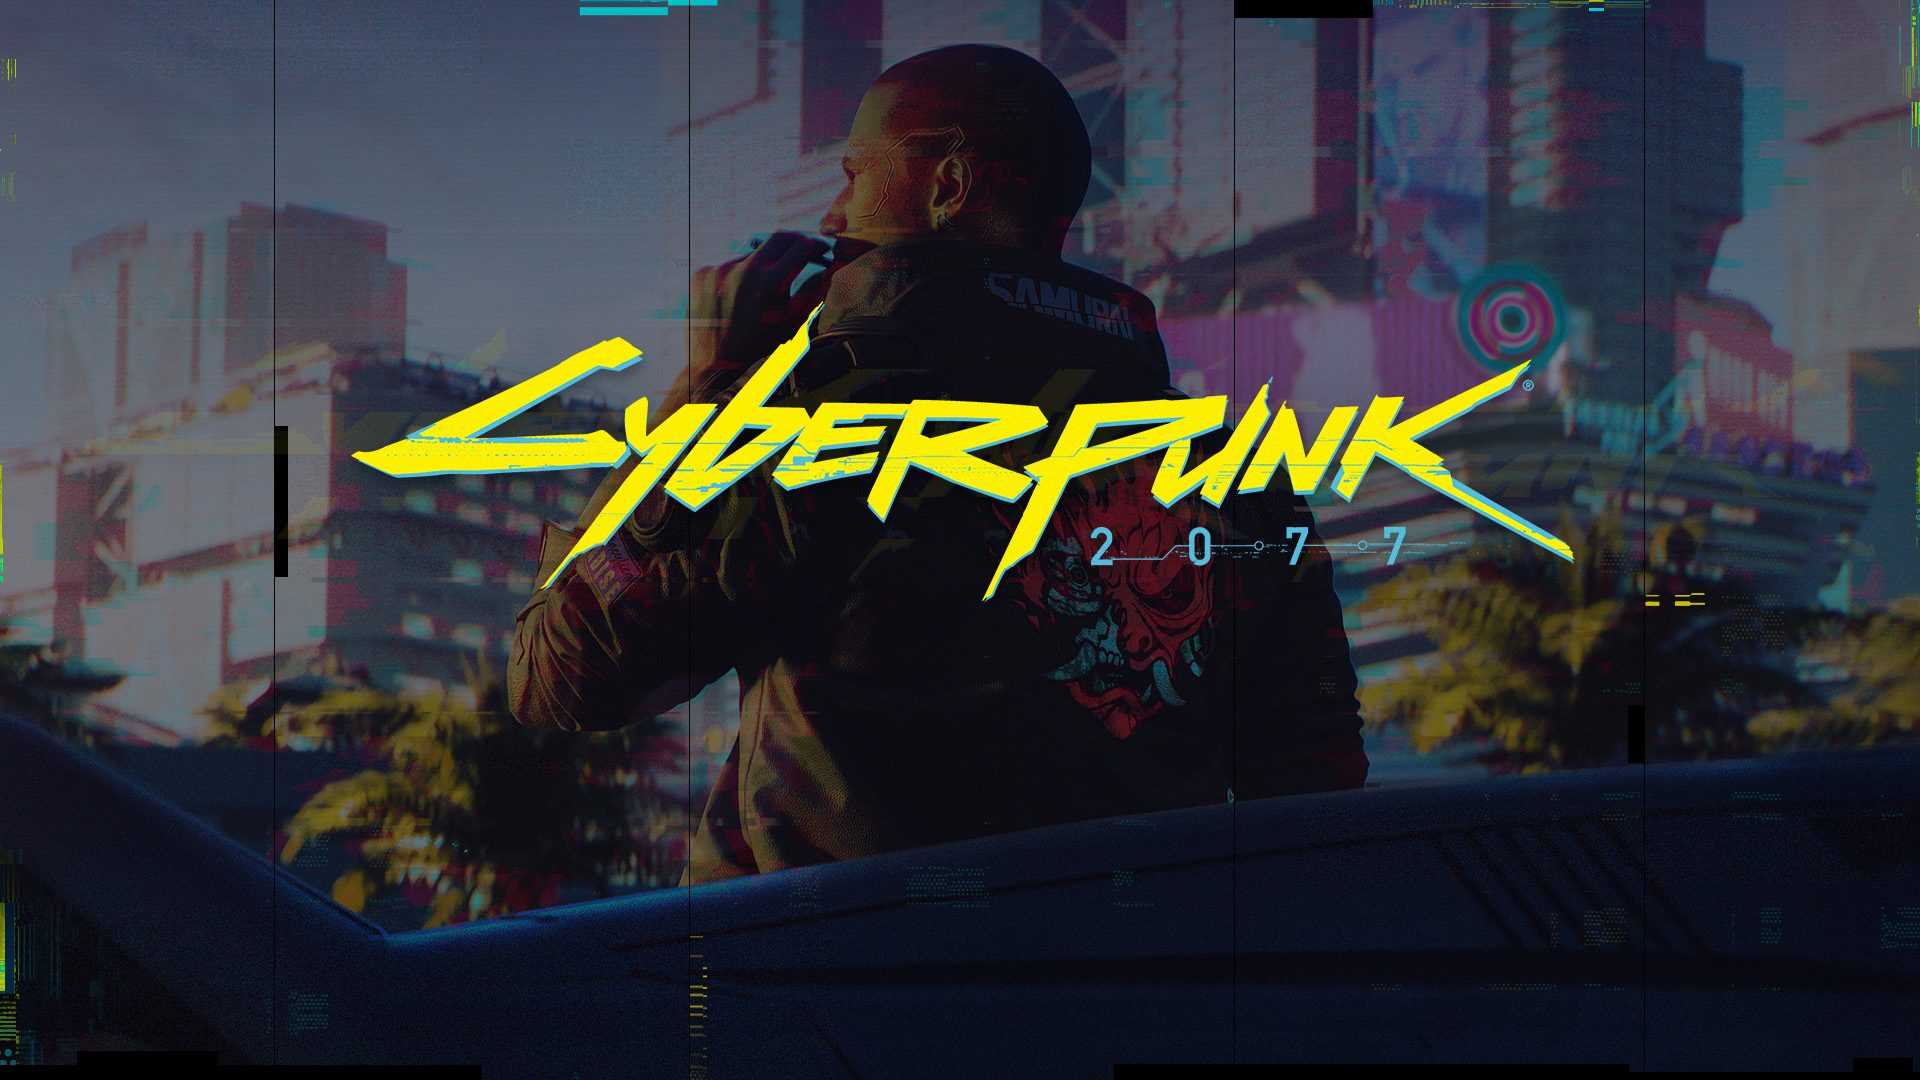 ANNONCÉ: L'achat de Cyberpunk 2077 sur Steam débloquera des récompenses exclusives